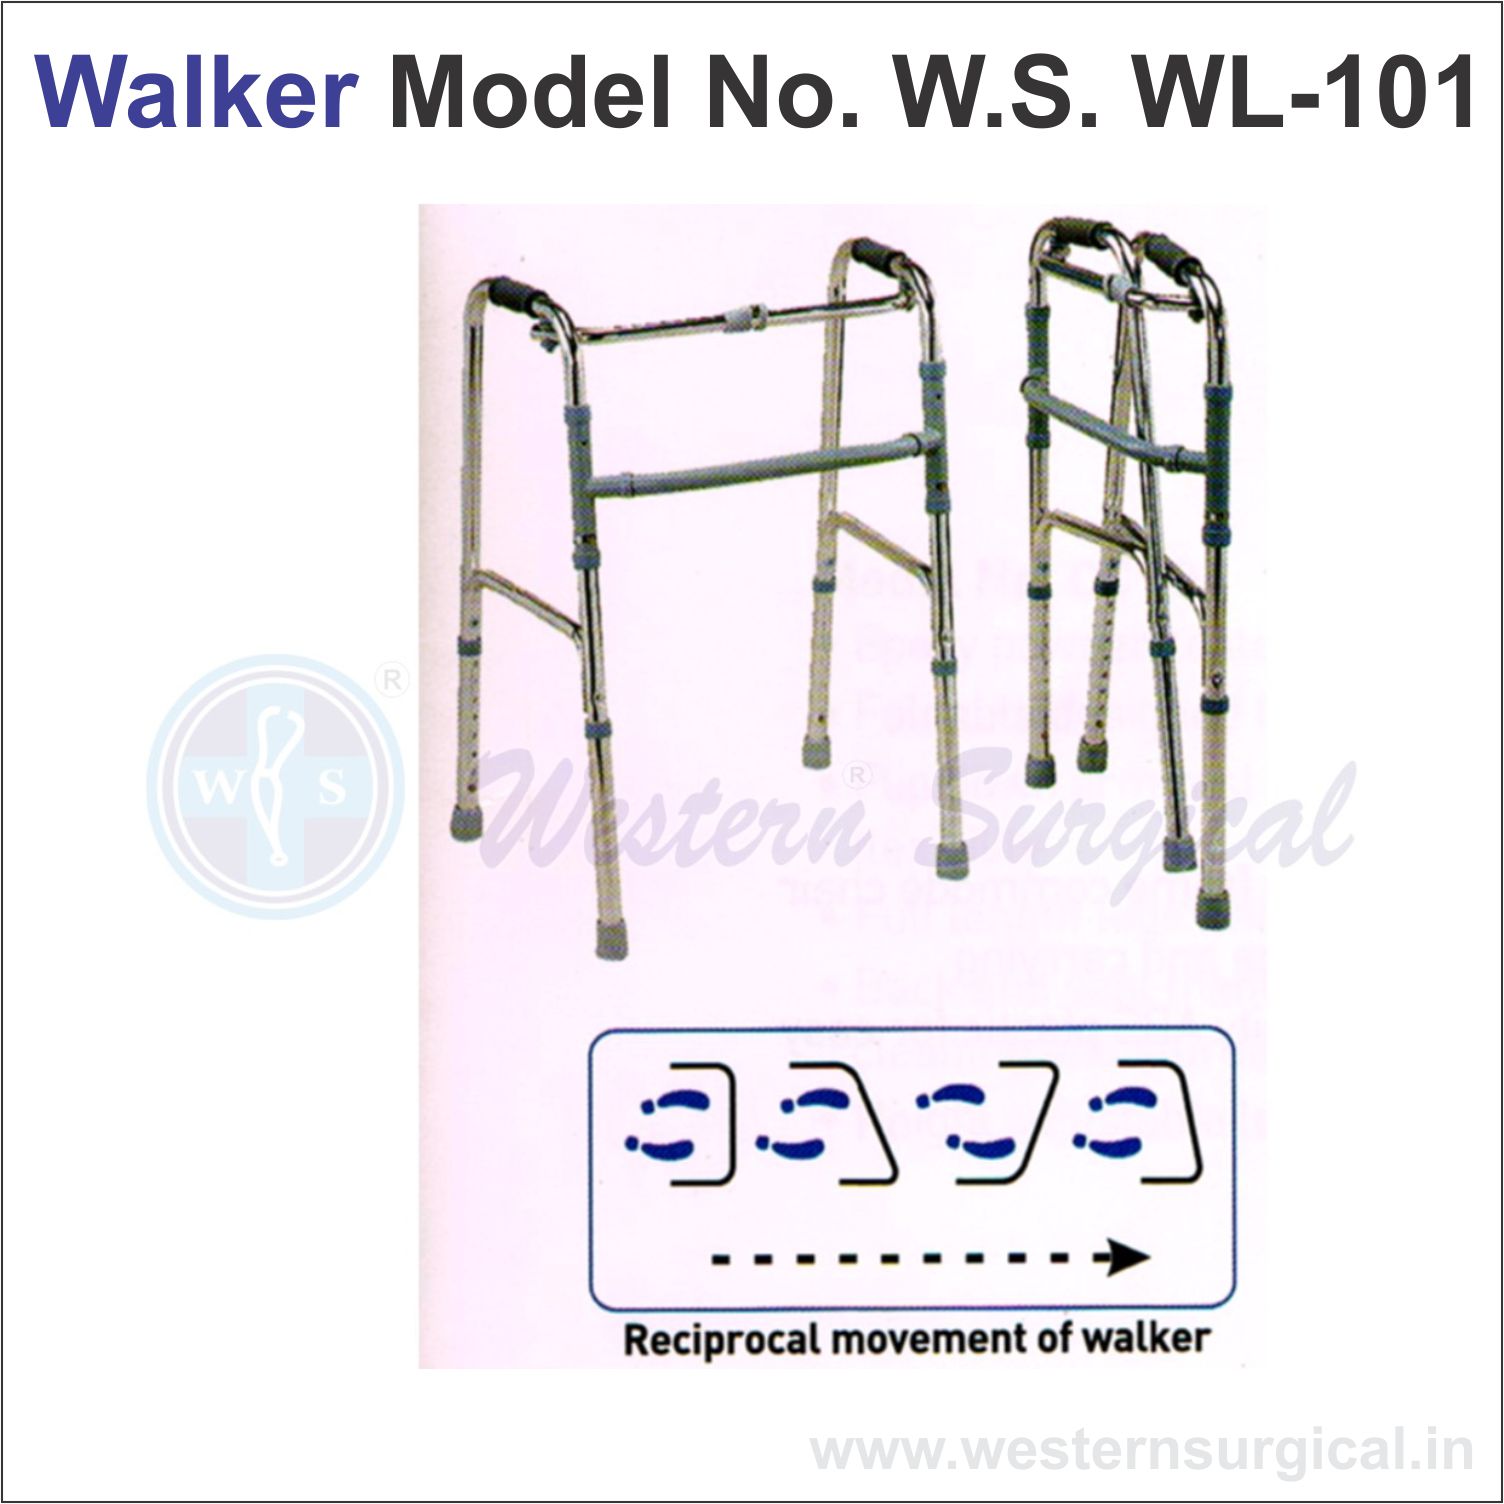 Walker Model No. W.S. WL - 101